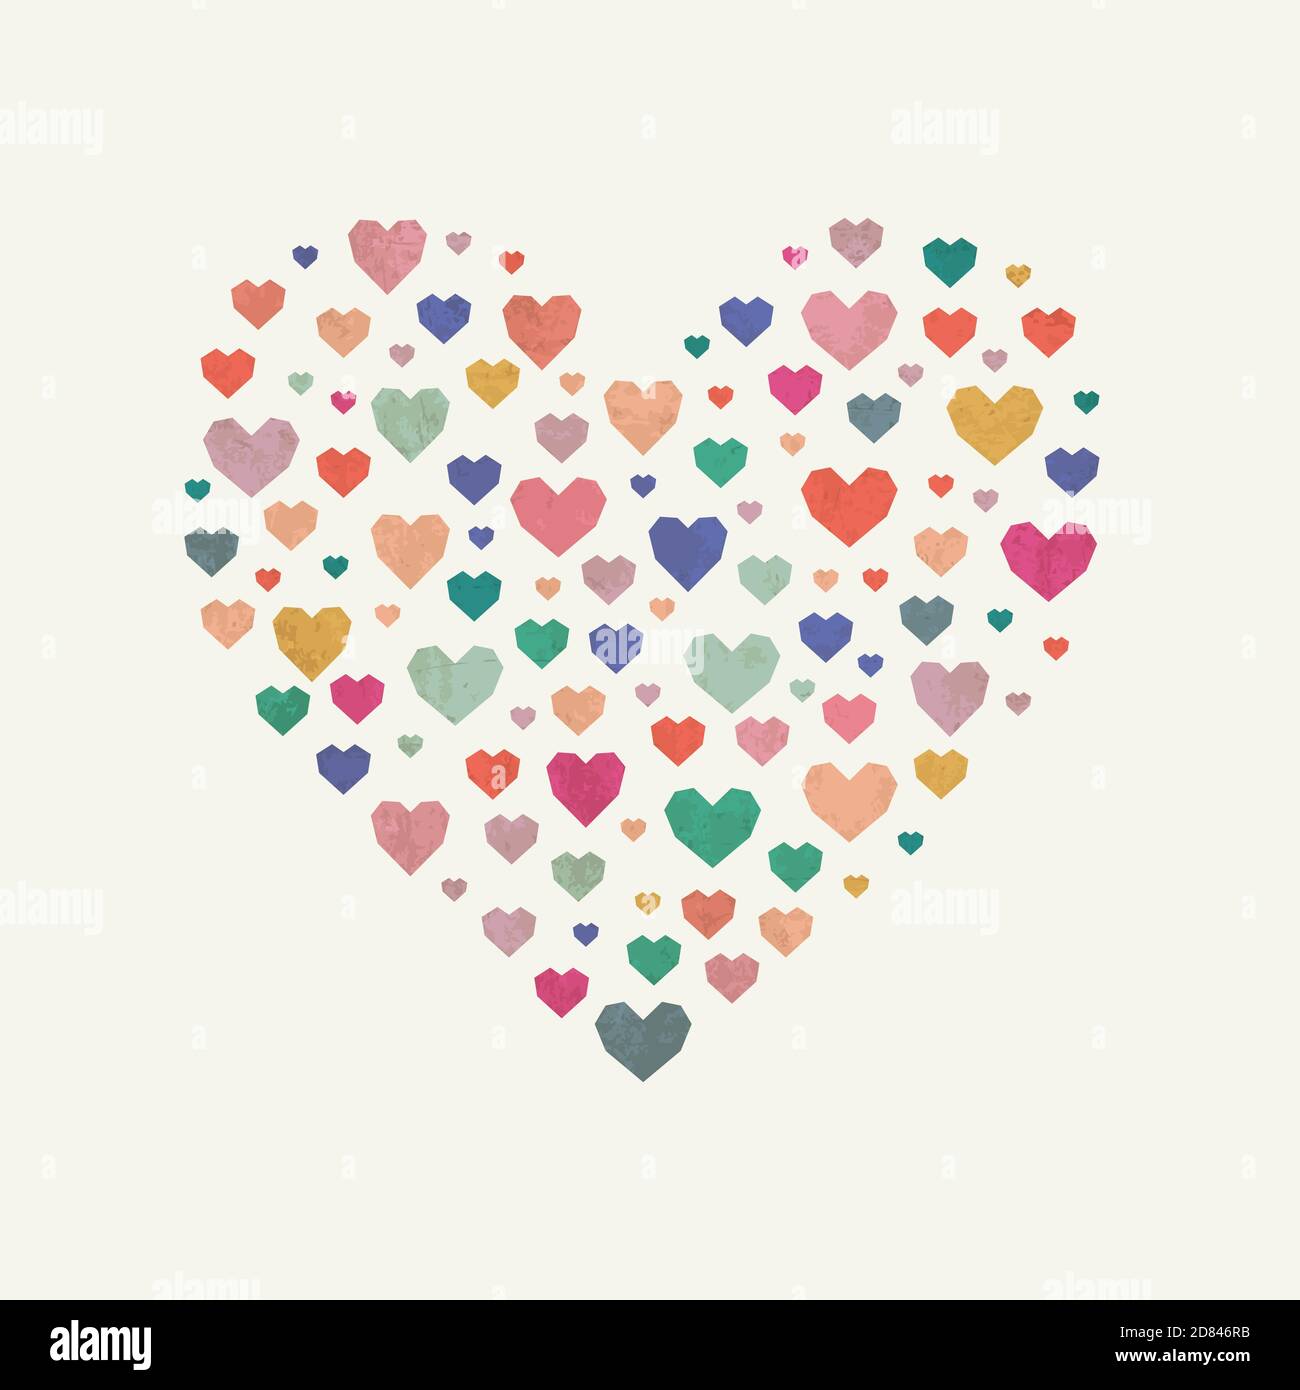 Die Herzform aus kleinen bunten Herzen – ideal für karitativen Hintergrund oder für Liebespost. Vektordesign. Stock Vektor